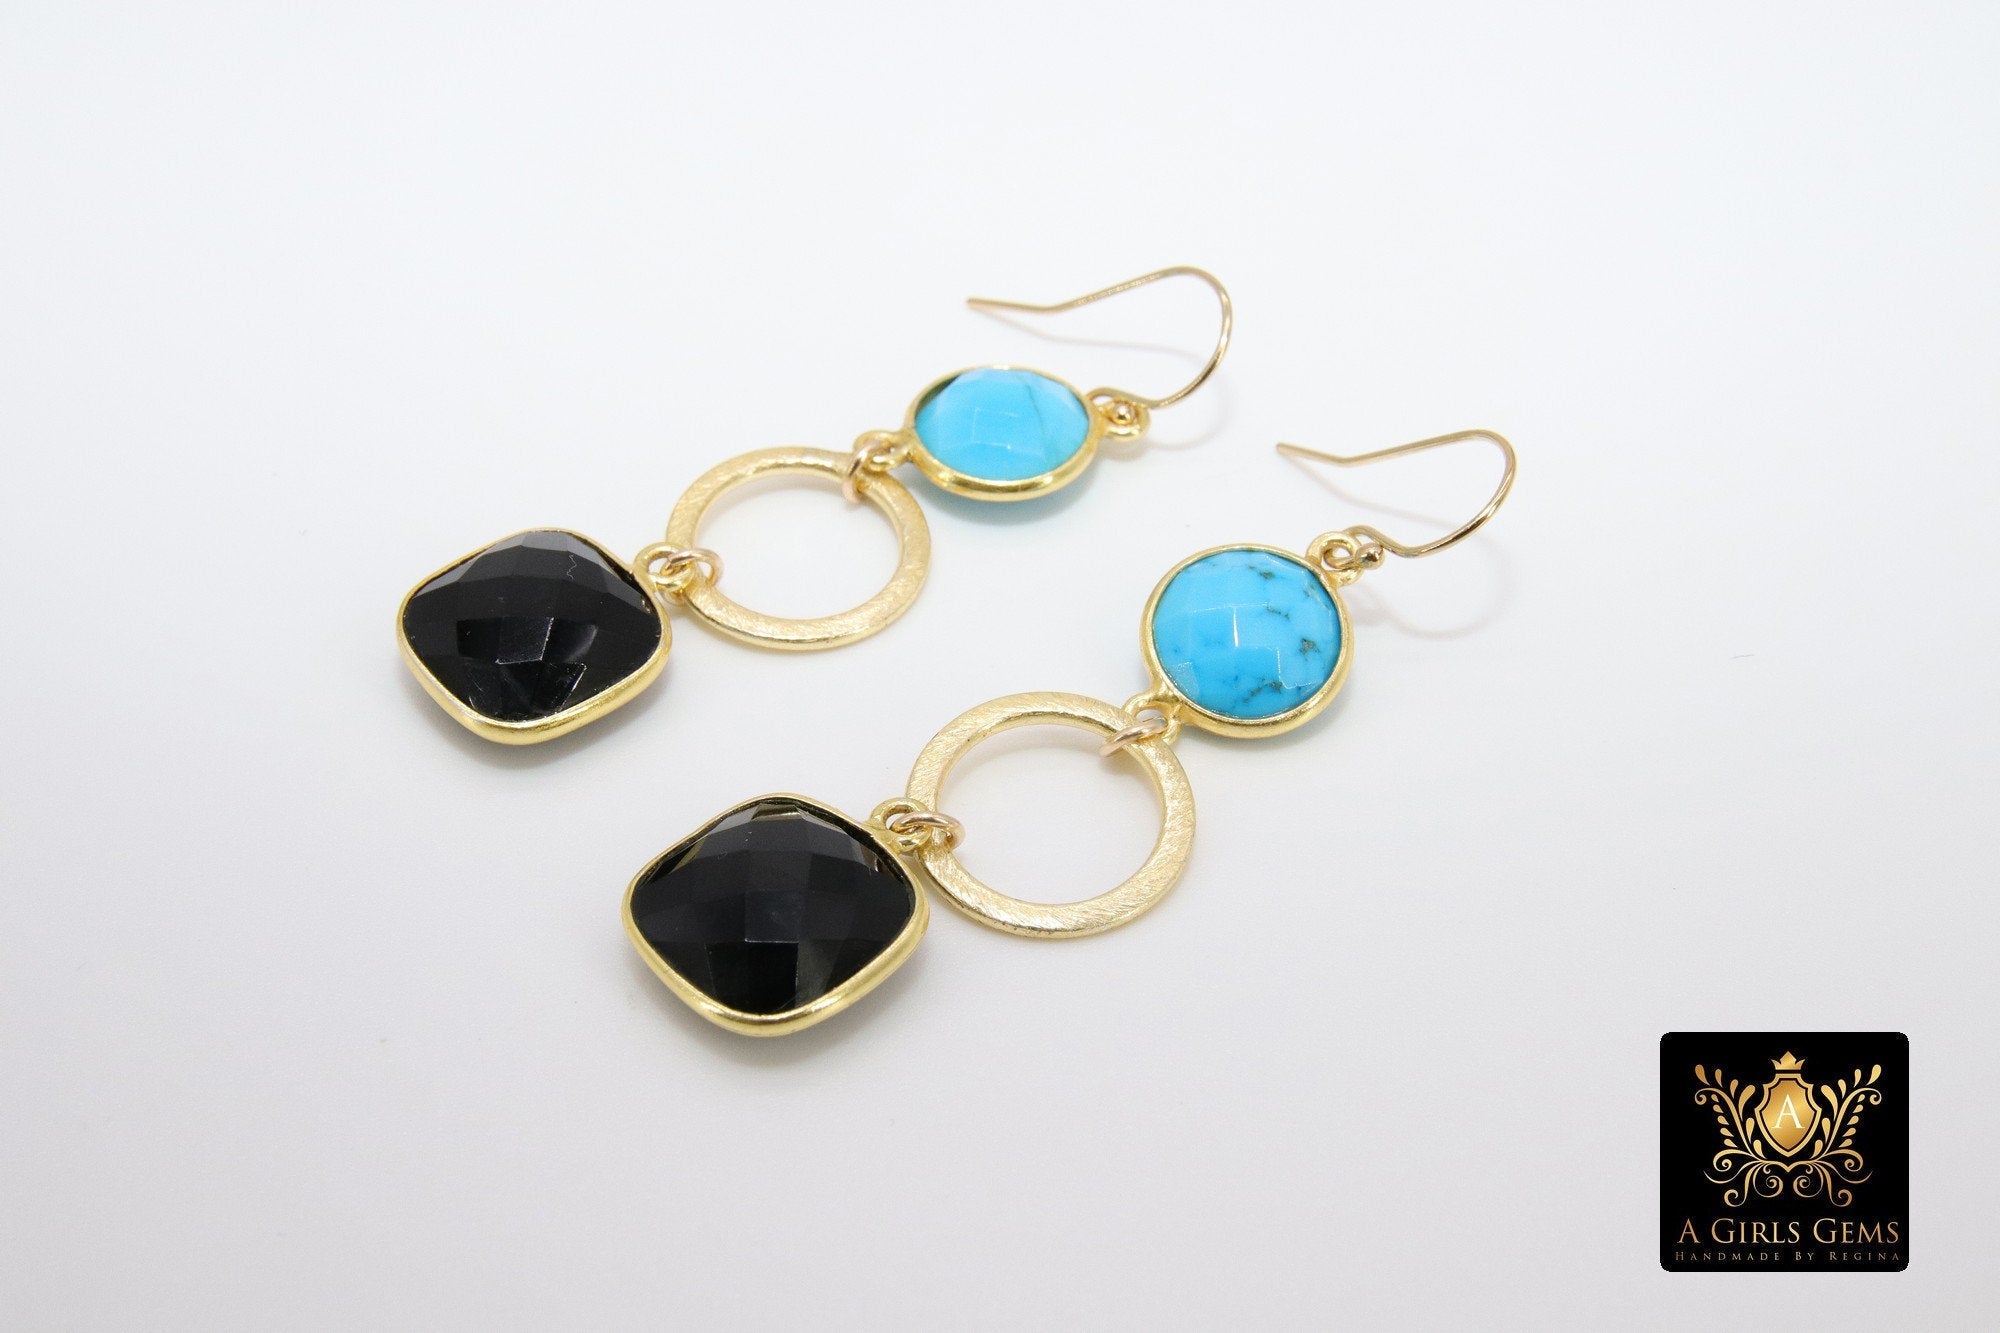 14 K Gold Blue Turquoise Earrings, Black Onyx Gemstones, Dangle Ear Wire Hooks - A Girls Gems